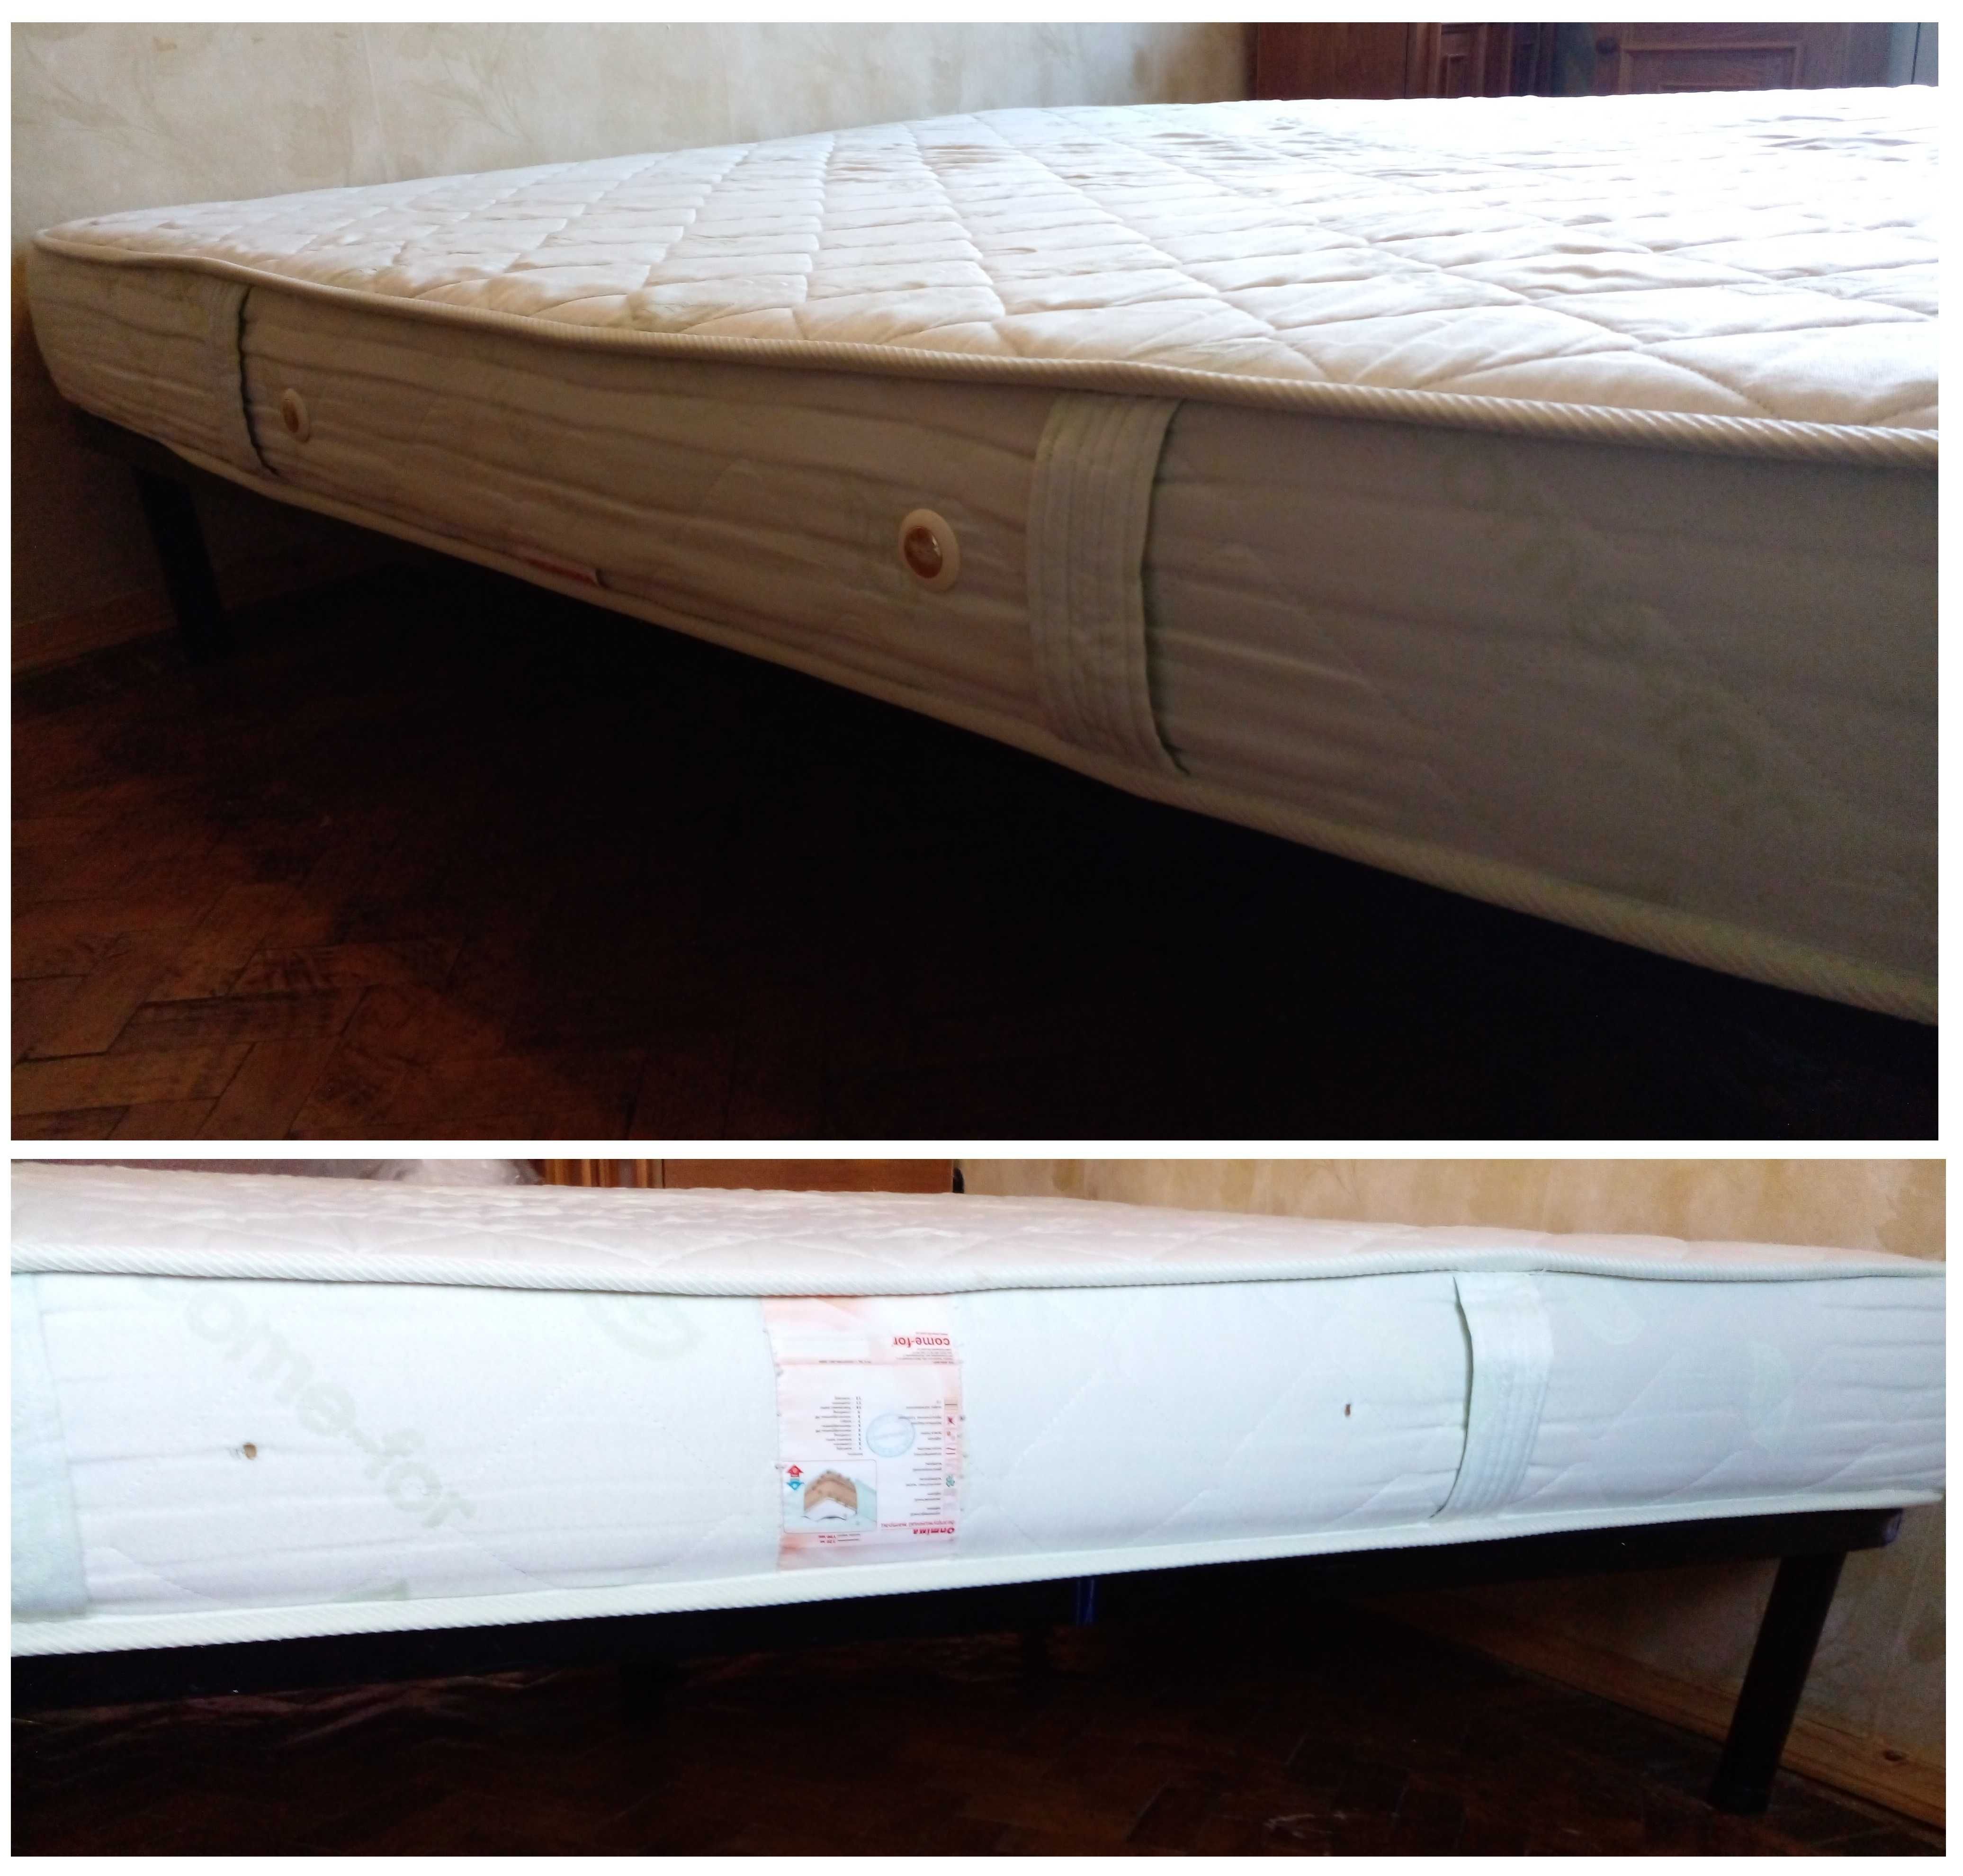 Кровать: матрас / матрац, каркас, под- и наматрасник, покрывало